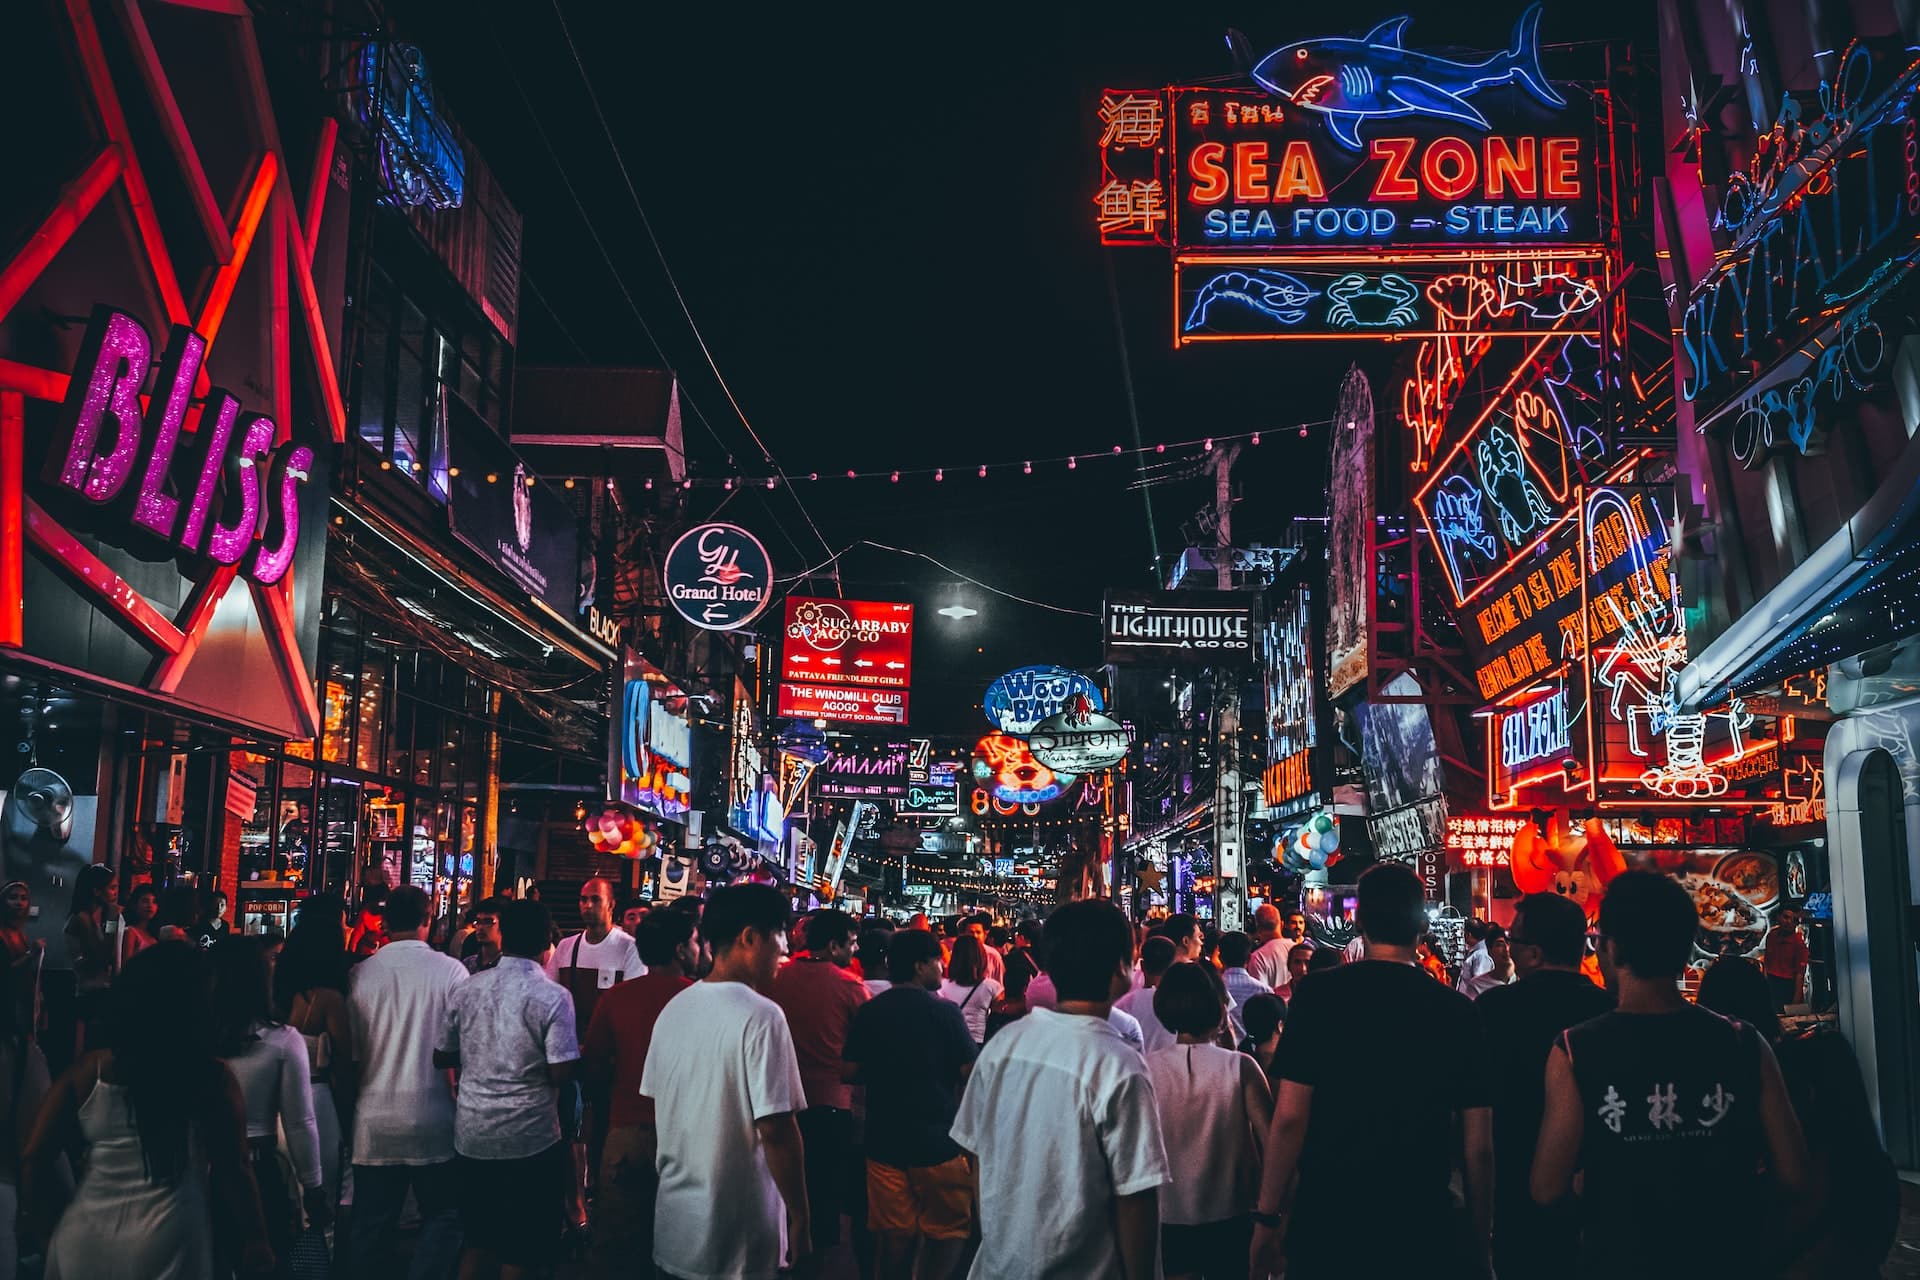 Situata lungo la costa, Pattaya Walking Street è la sede del divertimento, della vita notturna e del quartiere a luci rosse della città. È la zona preferita dai viaggiatori che desiderano scoprire il lato più sordido e divertente della Città del Peccato.